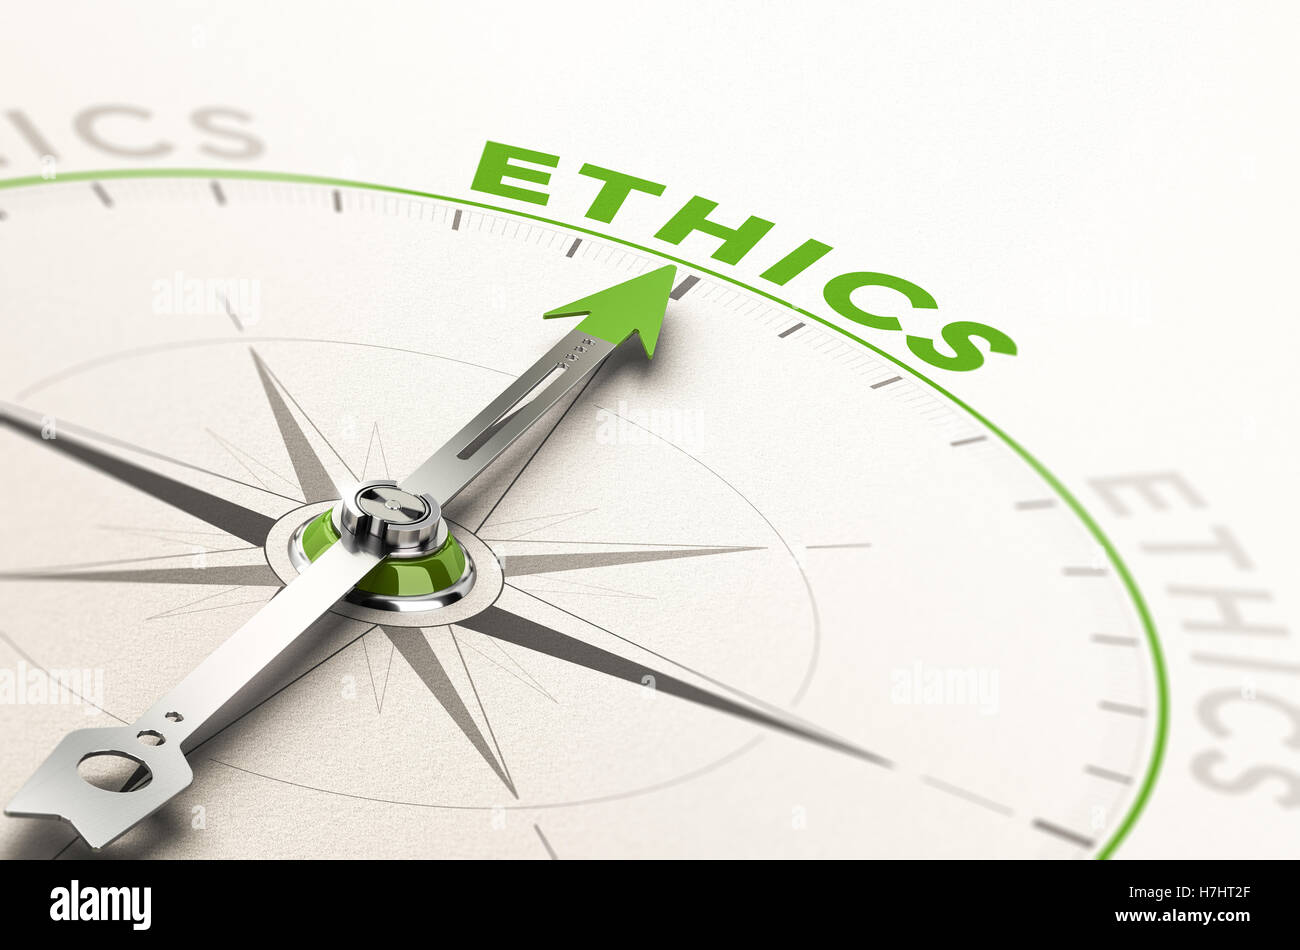 Boussole, l'aiguille dirigée vers le mot éthique. 3d illustration conceptuelle de l'intégrité de l'entreprise et moral Banque D'Images